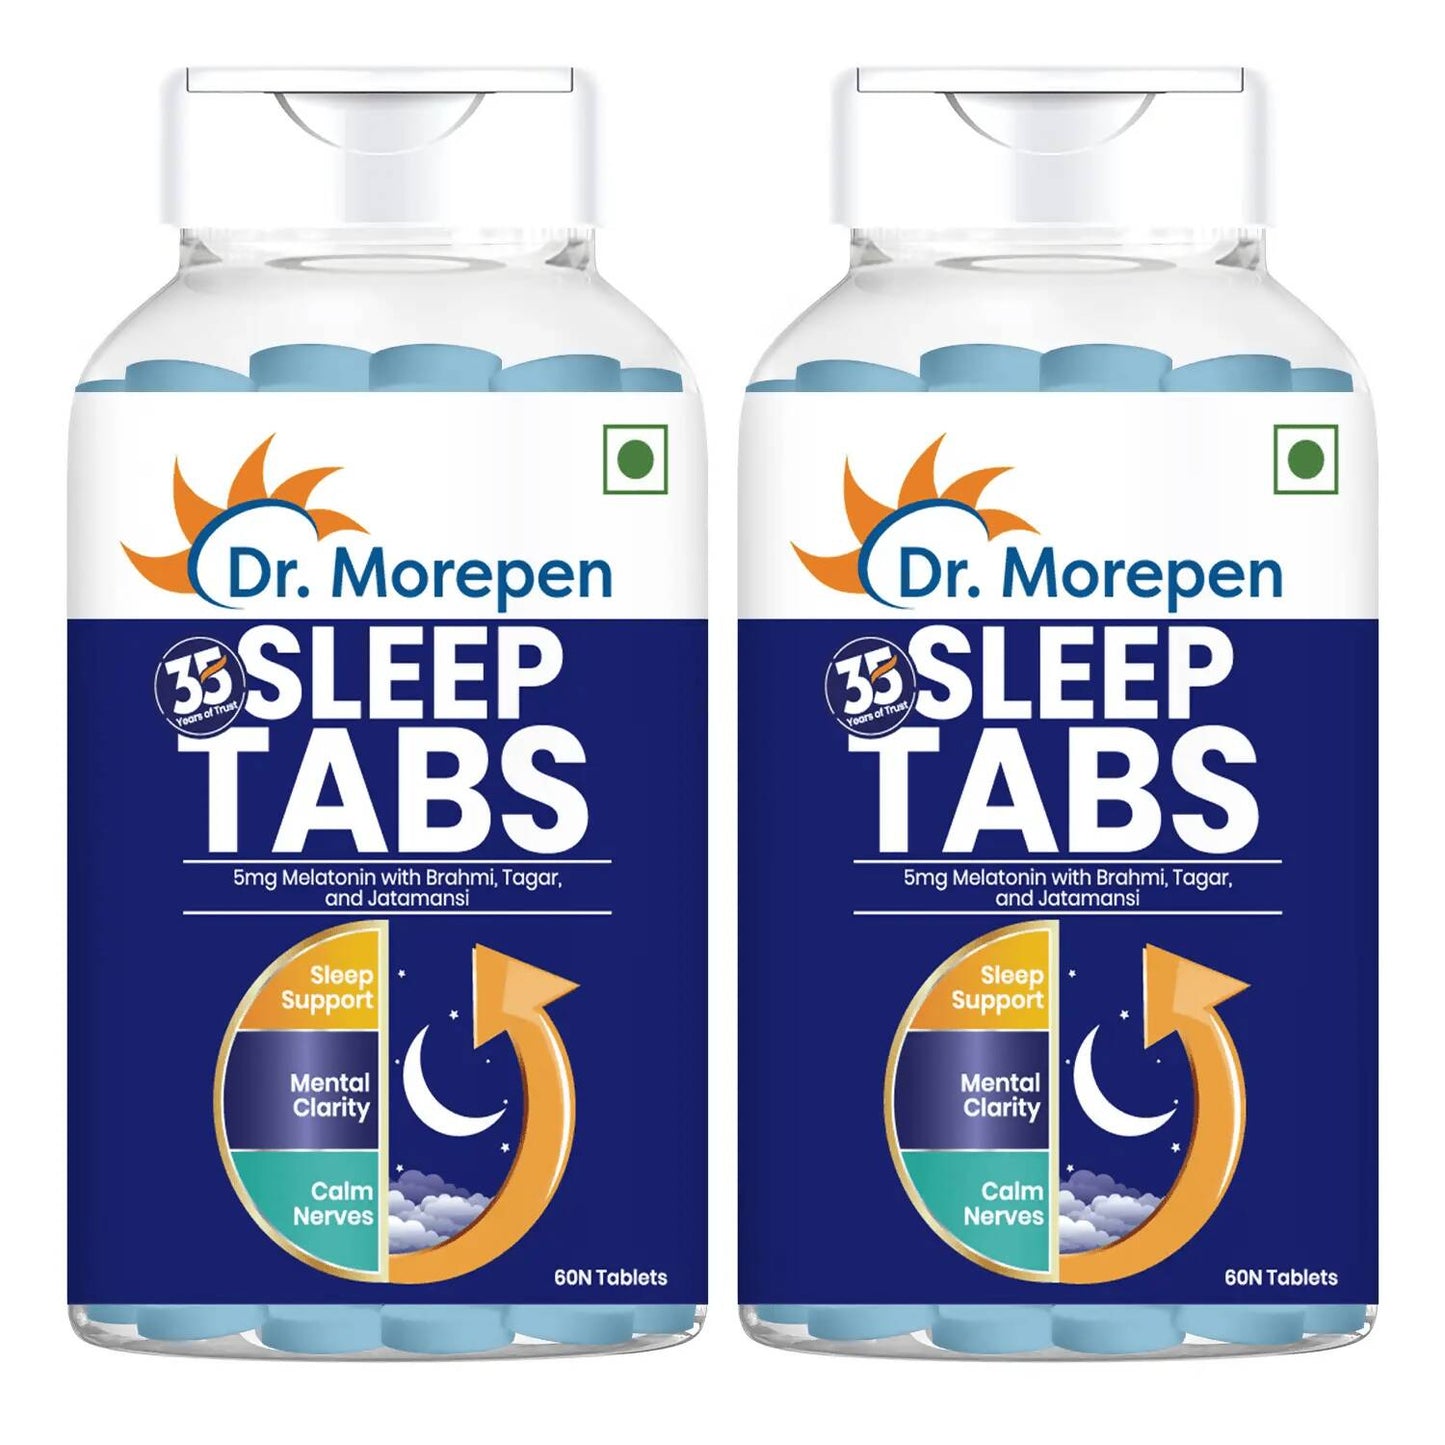 Dr. Morepen Sleep Tabs Melatonin 5mg Sleeping Tablets - usa canada australia